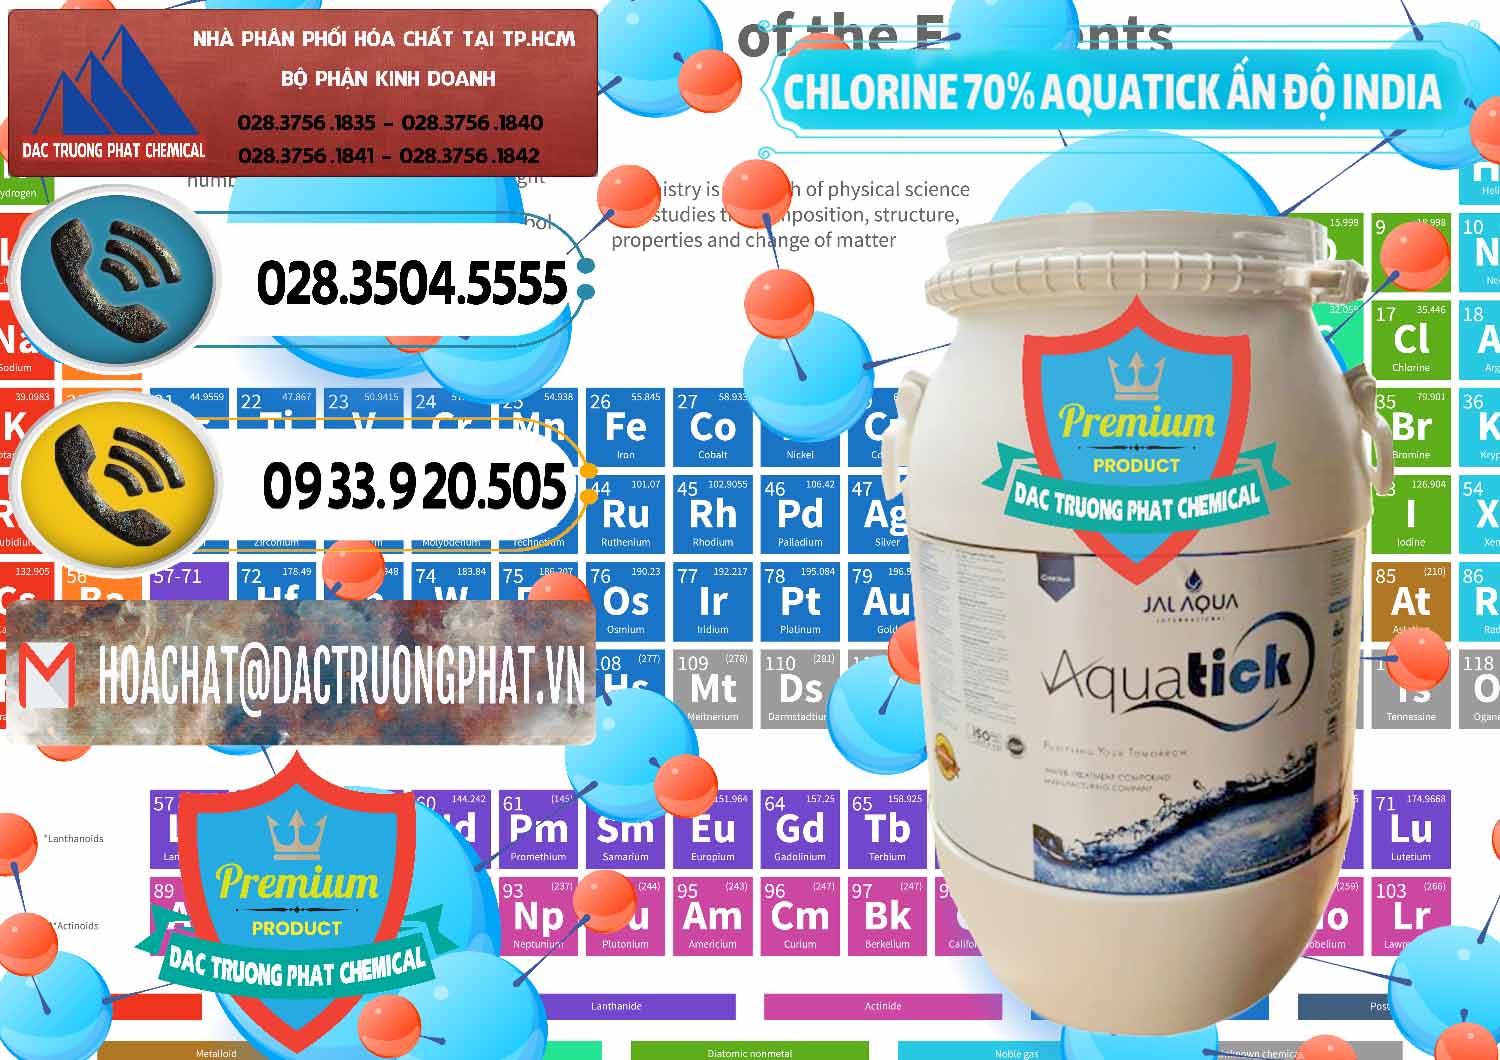 Cty chuyên cung ứng ( bán ) Chlorine – Clorin 70% Aquatick Jal Aqua Ấn Độ India - 0215 - Chuyên phân phối _ cung cấp hóa chất tại TP.HCM - hoachatdetnhuom.vn